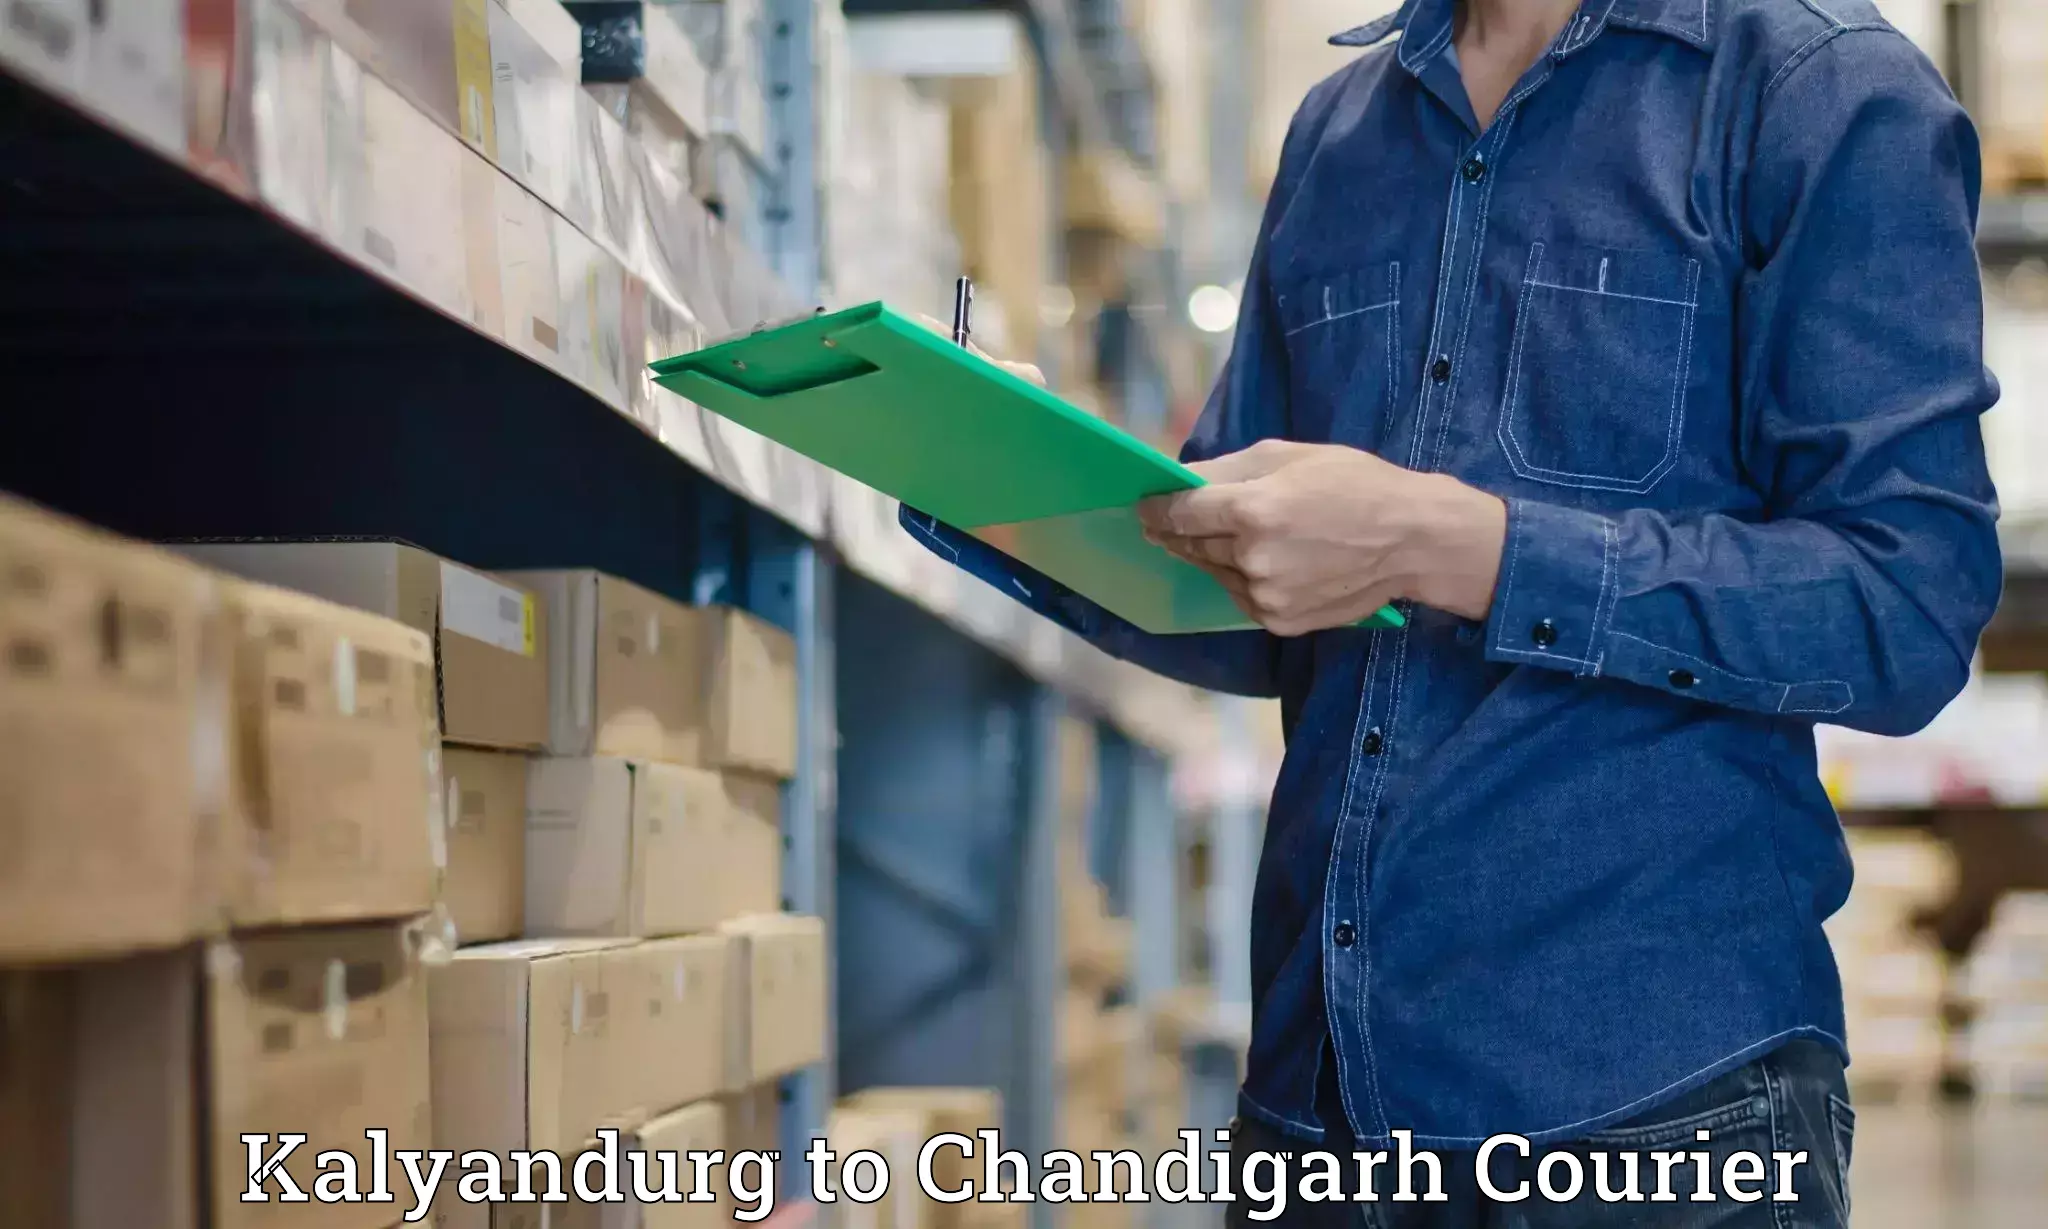 Speedy delivery service Kalyandurg to Chandigarh